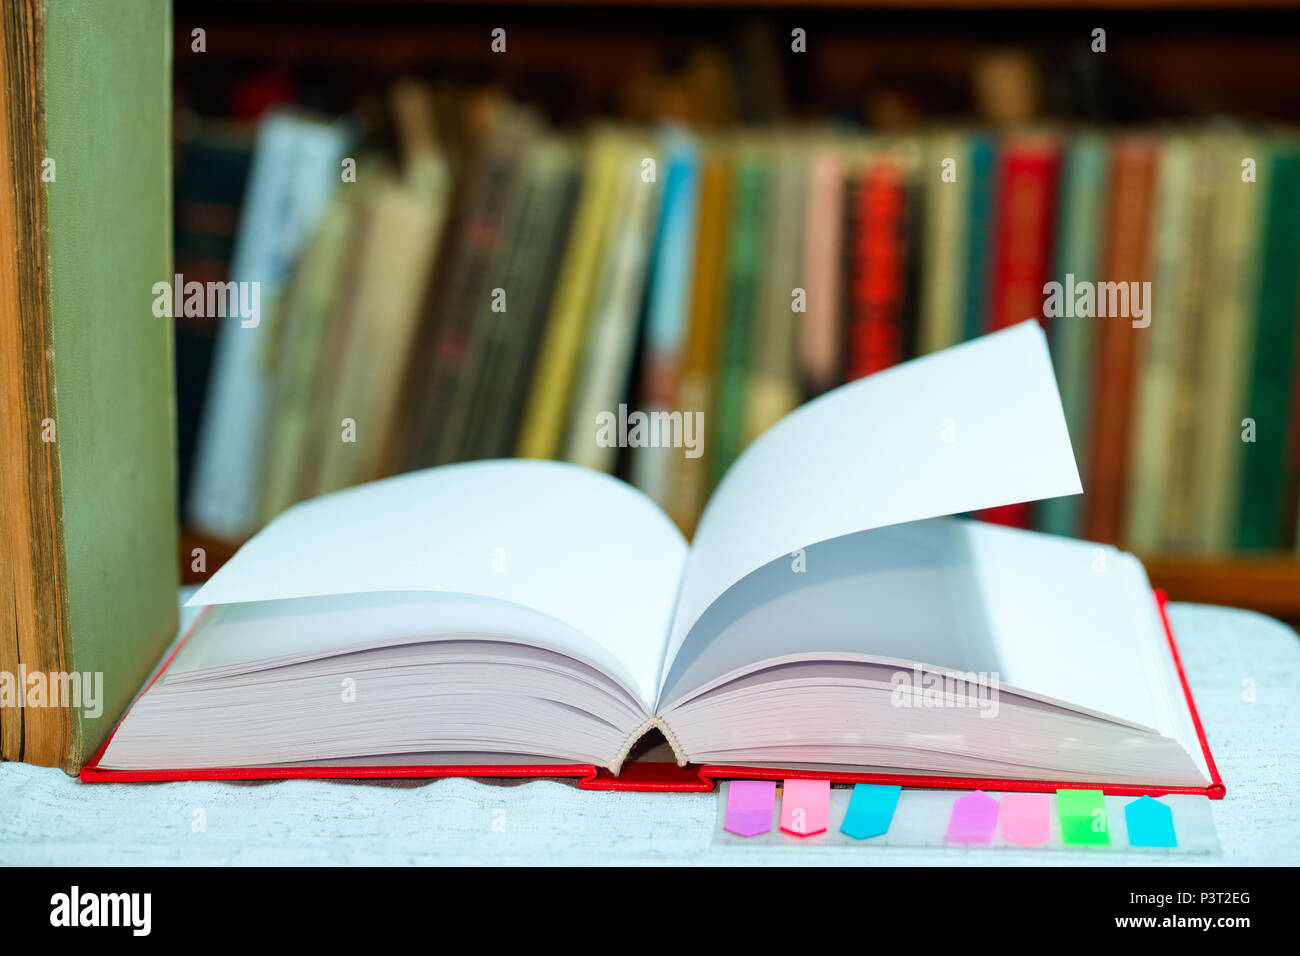 Buch auf, Stapel von gebundene Bücher auf dem Tisch. Ansicht von oben. Stockfoto